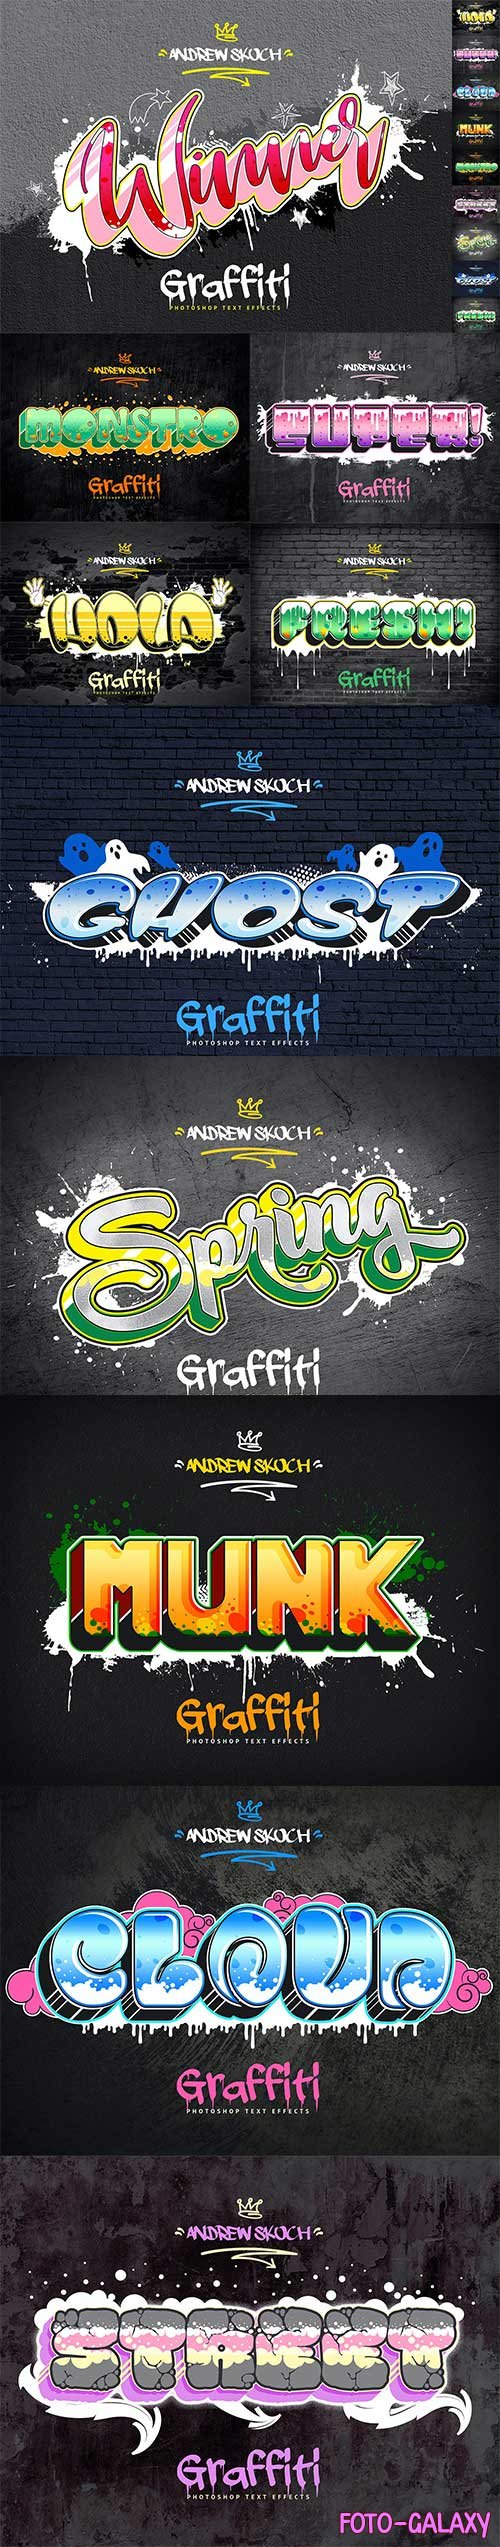 Graffiti Text Effects - 10 PSD - vol 3